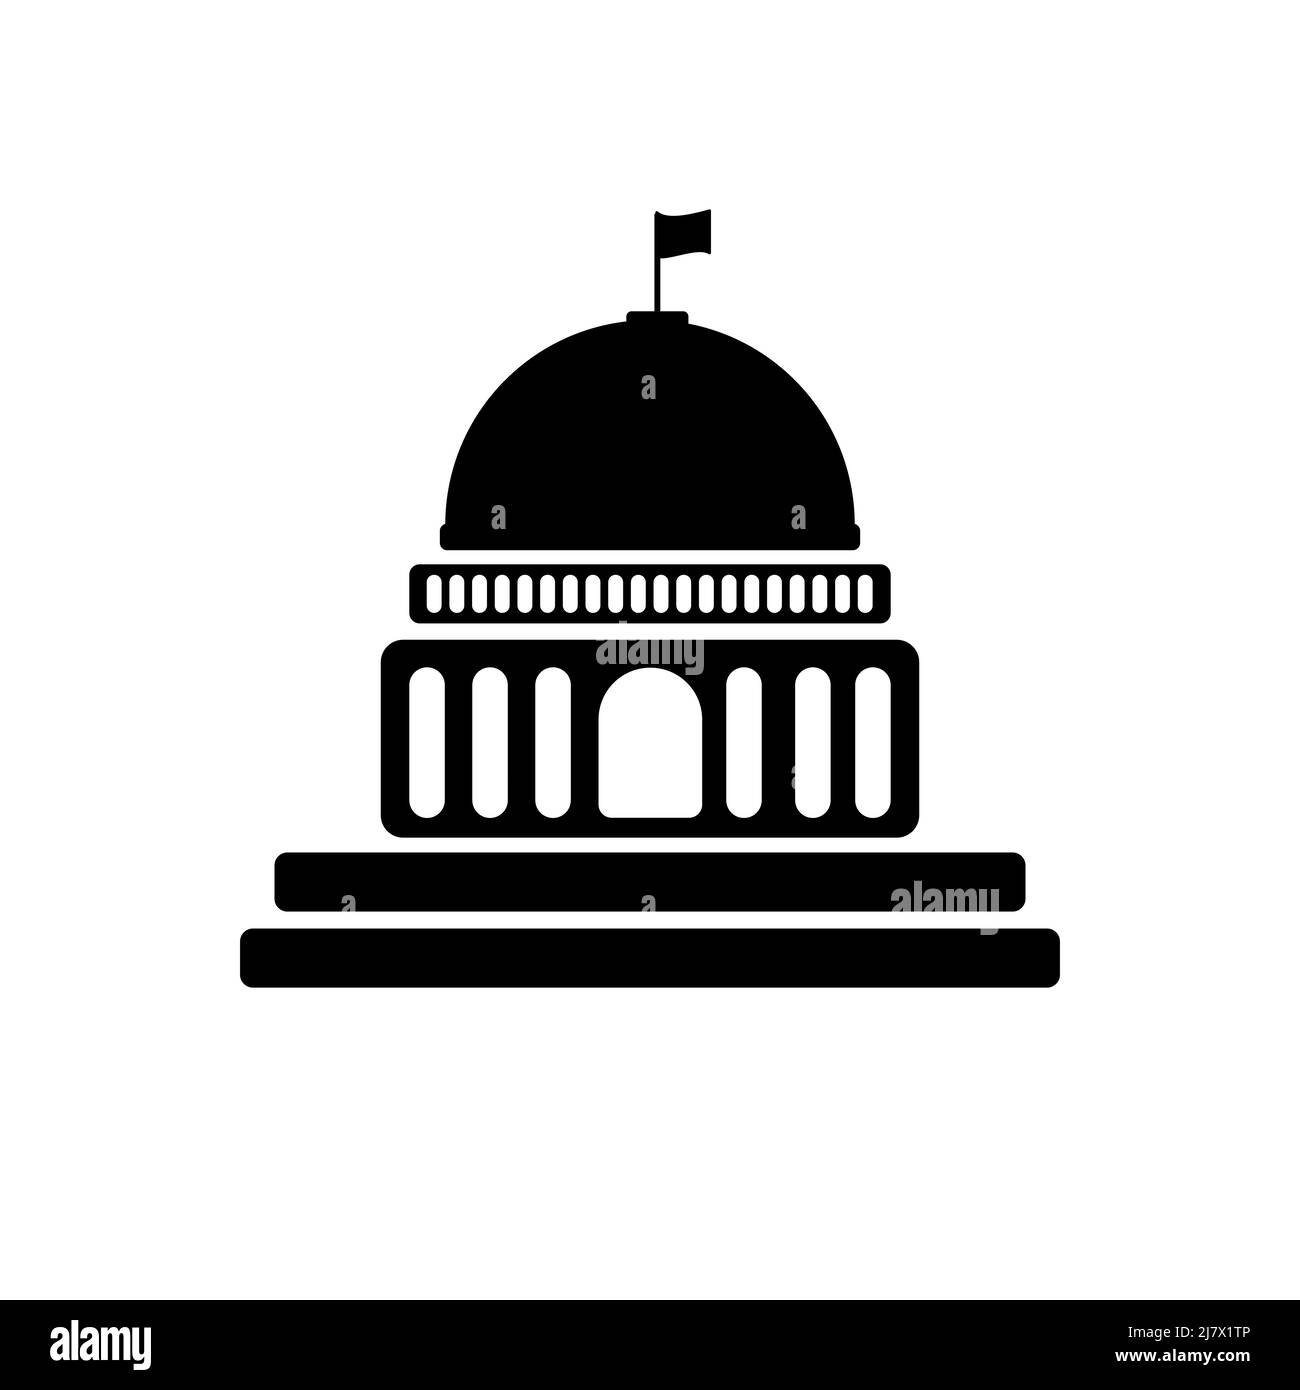 White house, congress vector icon Stock Vector